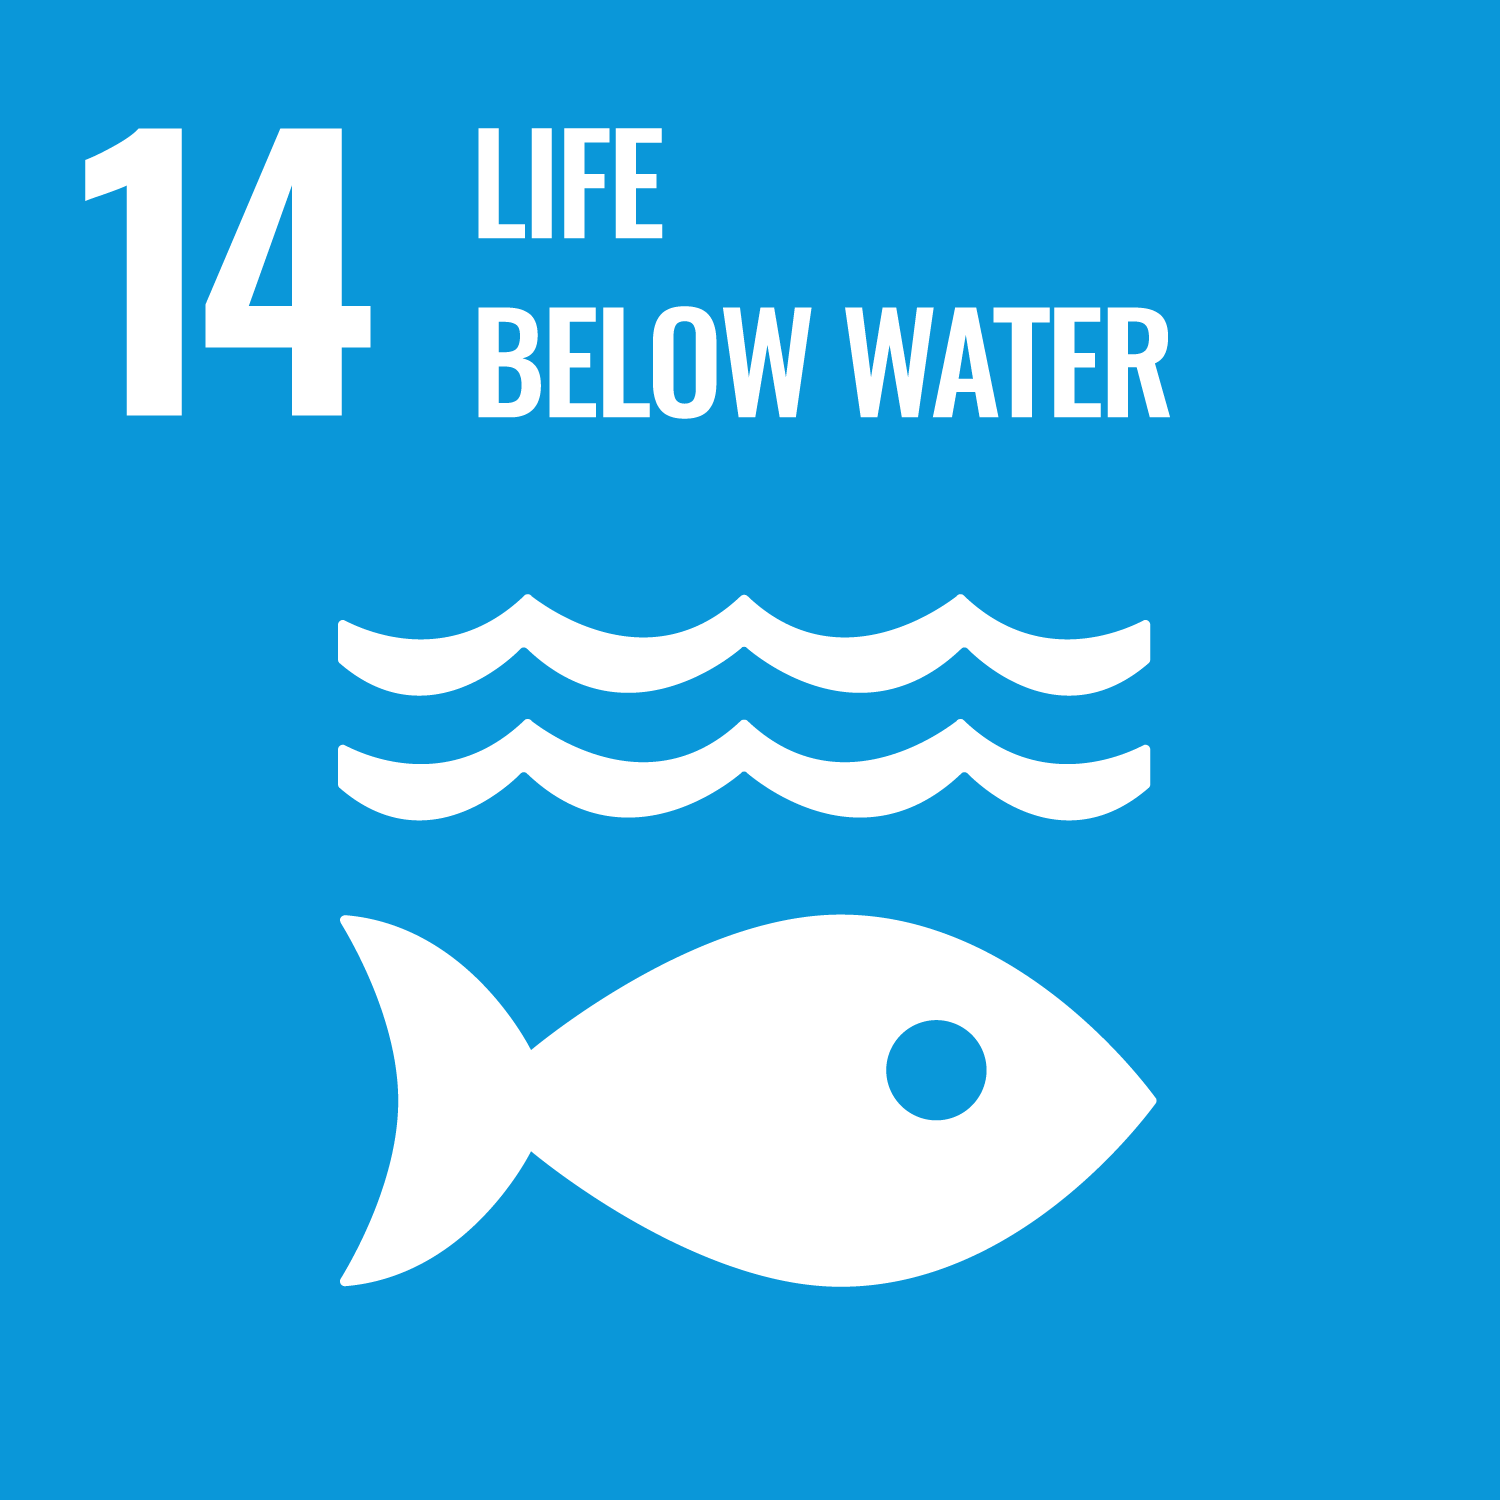 sustainable-development-goals-life-below-water